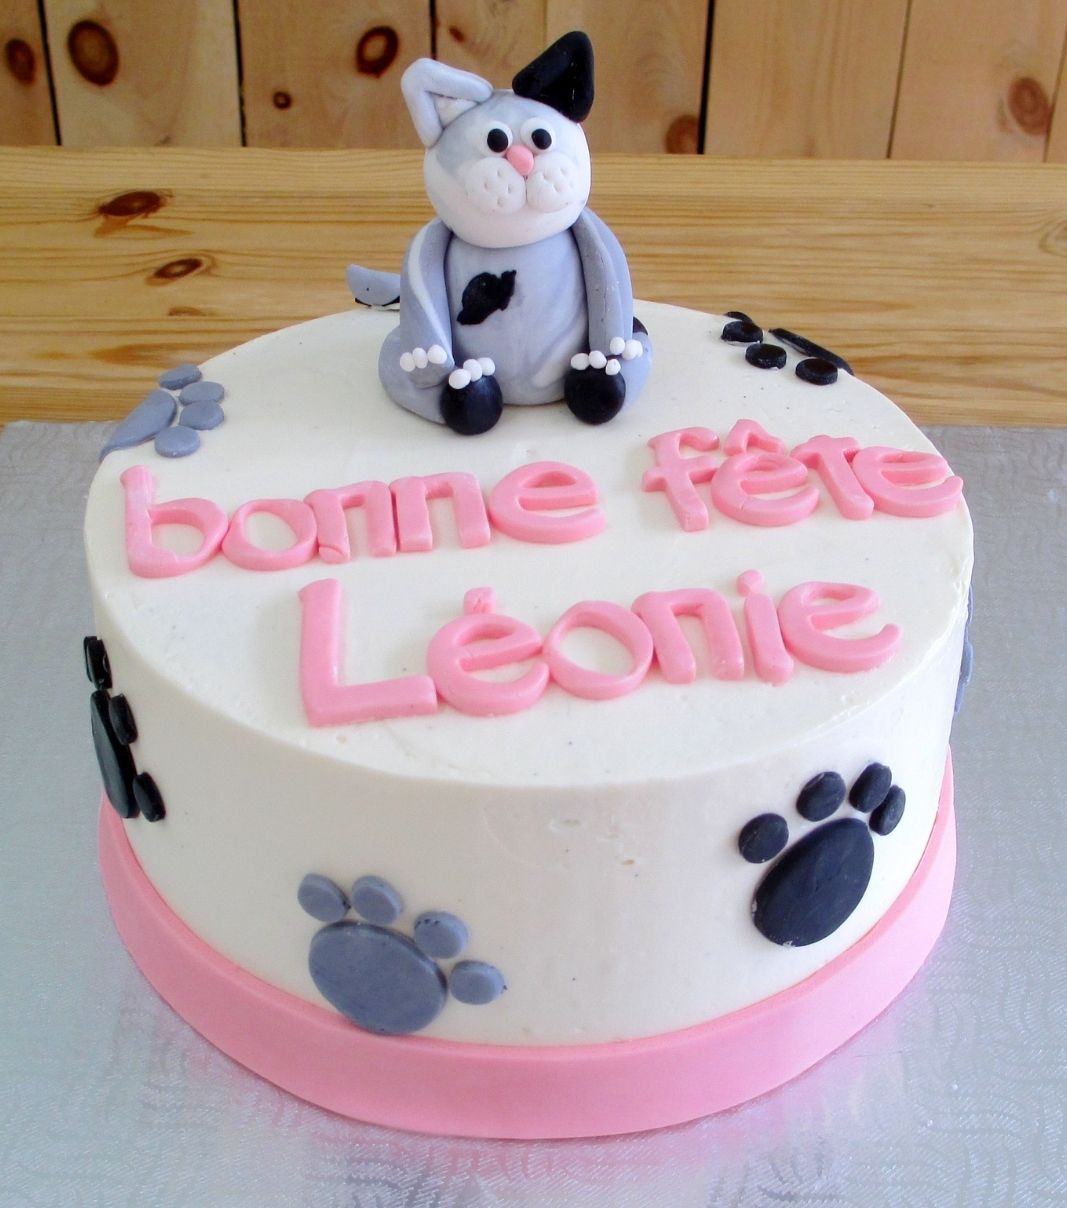 Gâteau d'anniversaire sur mesure de Léonie: gâteau à thématique de chat avec une crème au beurre et décoré d'une figurine de chat et de pattes de chat en fondant.